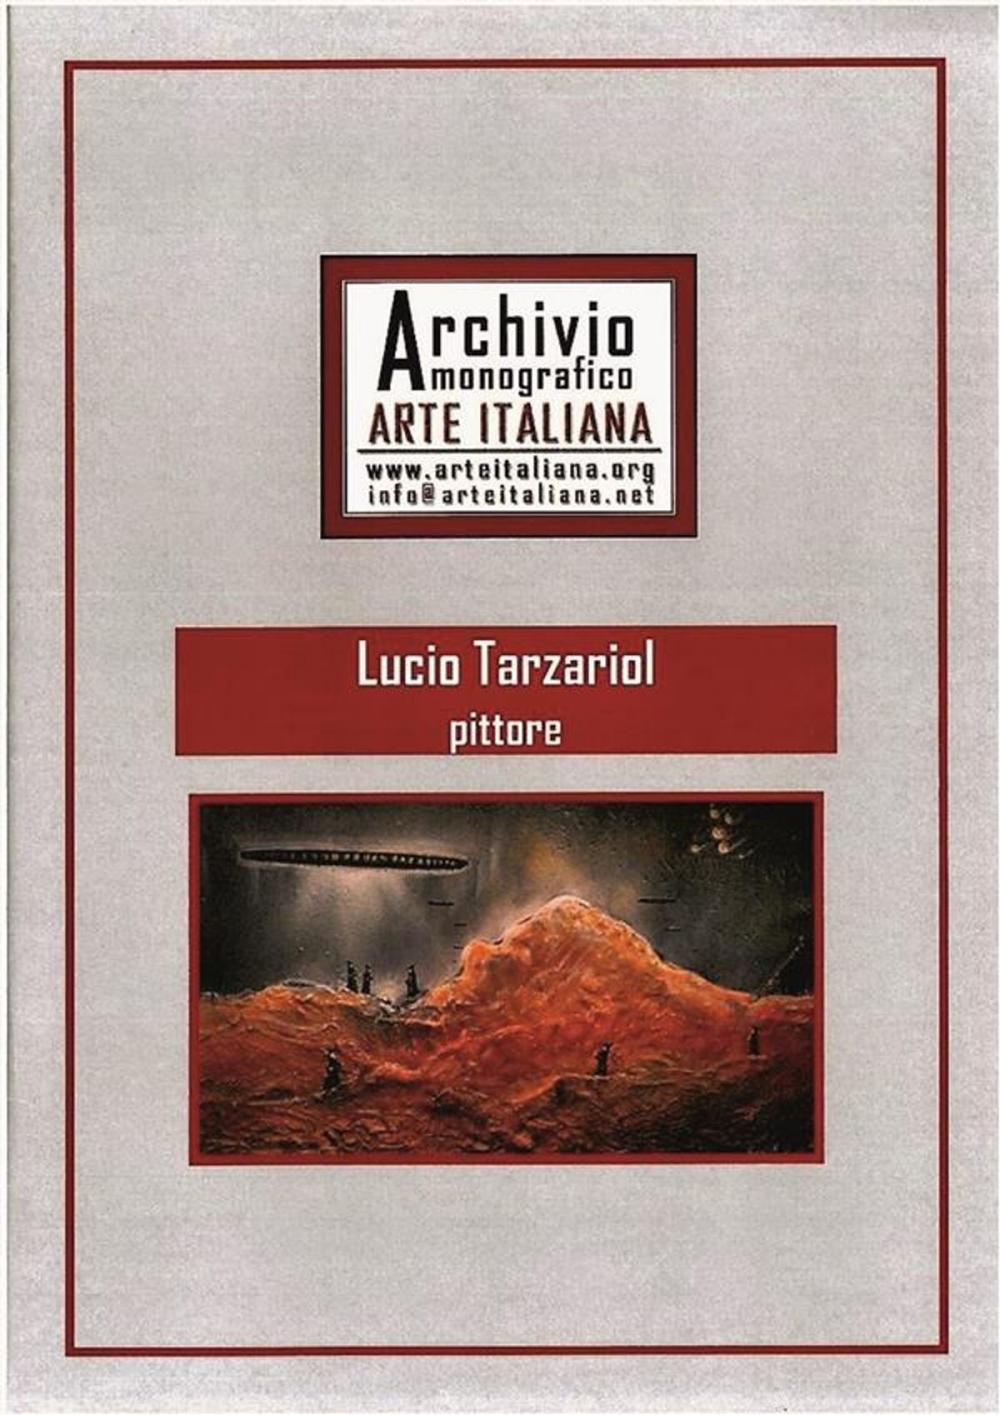 Big bigCover of Artista Lucio Tarzariol da Castello Roganzuolo - Archivio Monografico Arte Italiana